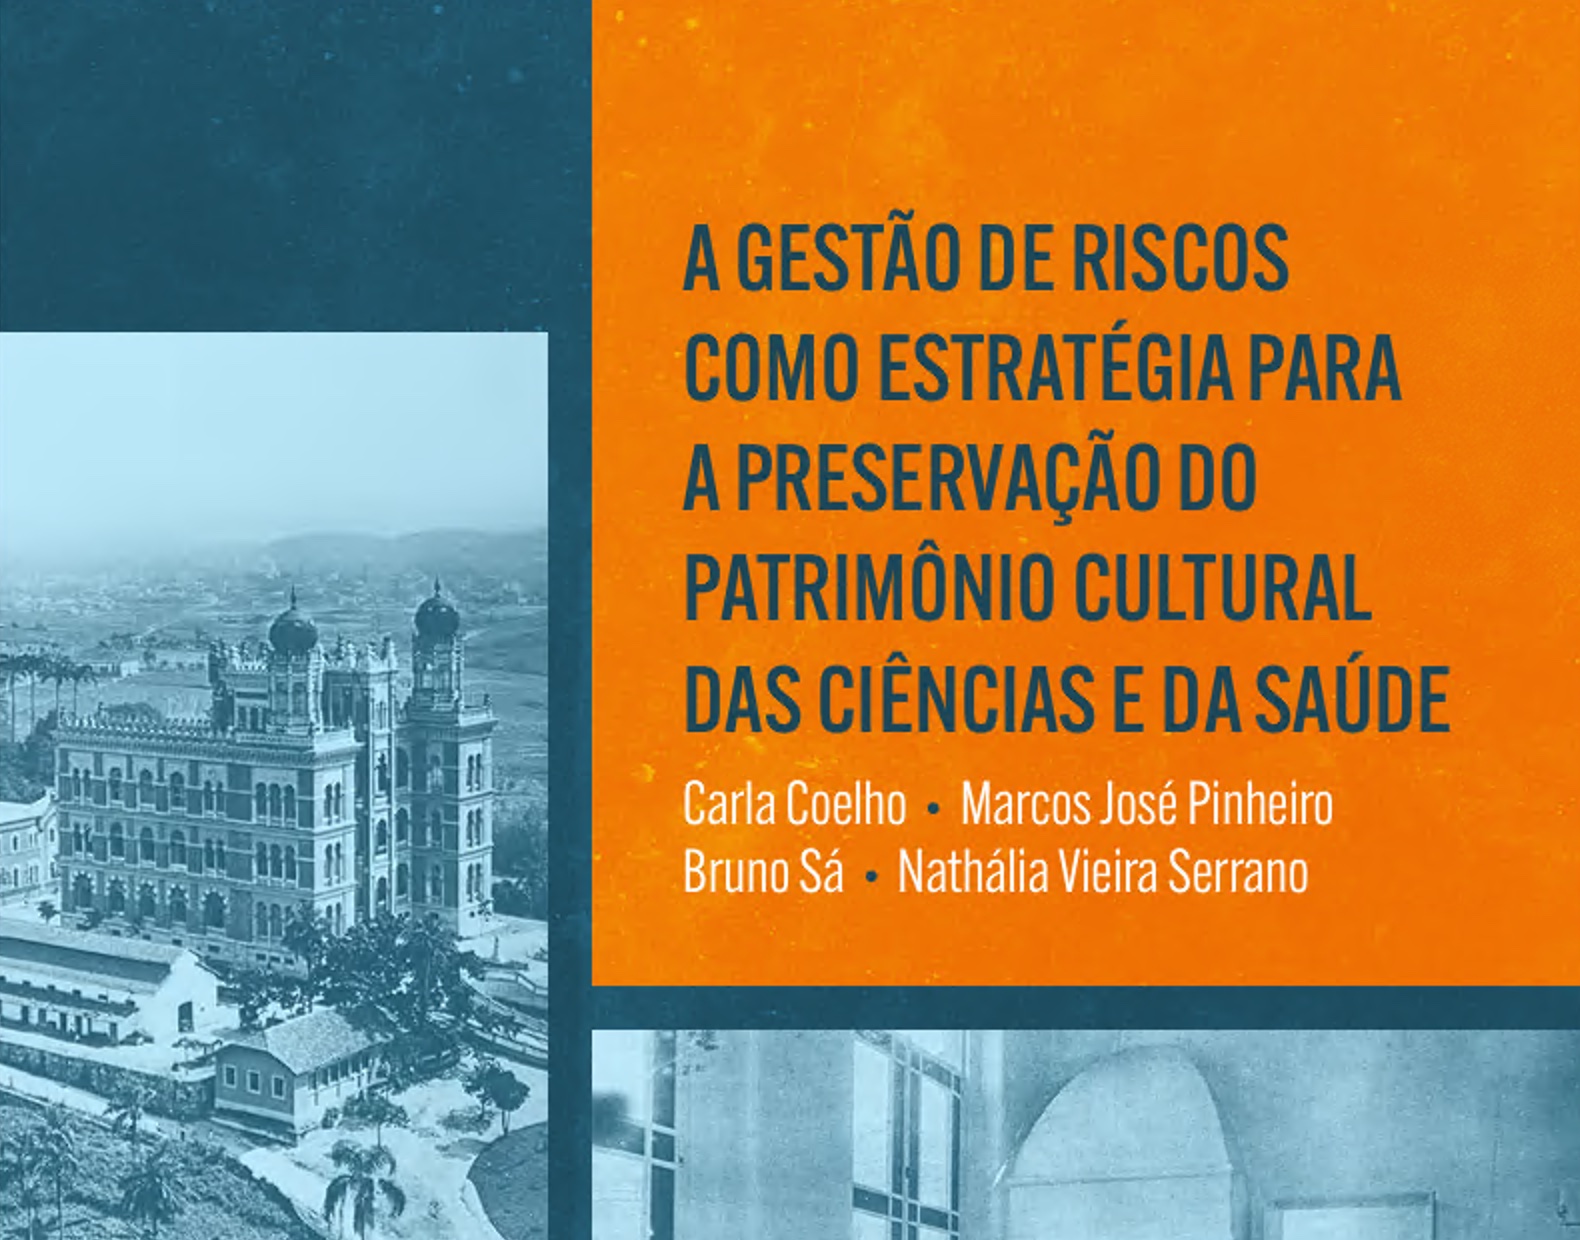 A gestão de riscos como estratégia para a preservação do patrimônio cultural das ciências e da saúde. Ao fundo, foto histórica do castelo da Fiocruz.